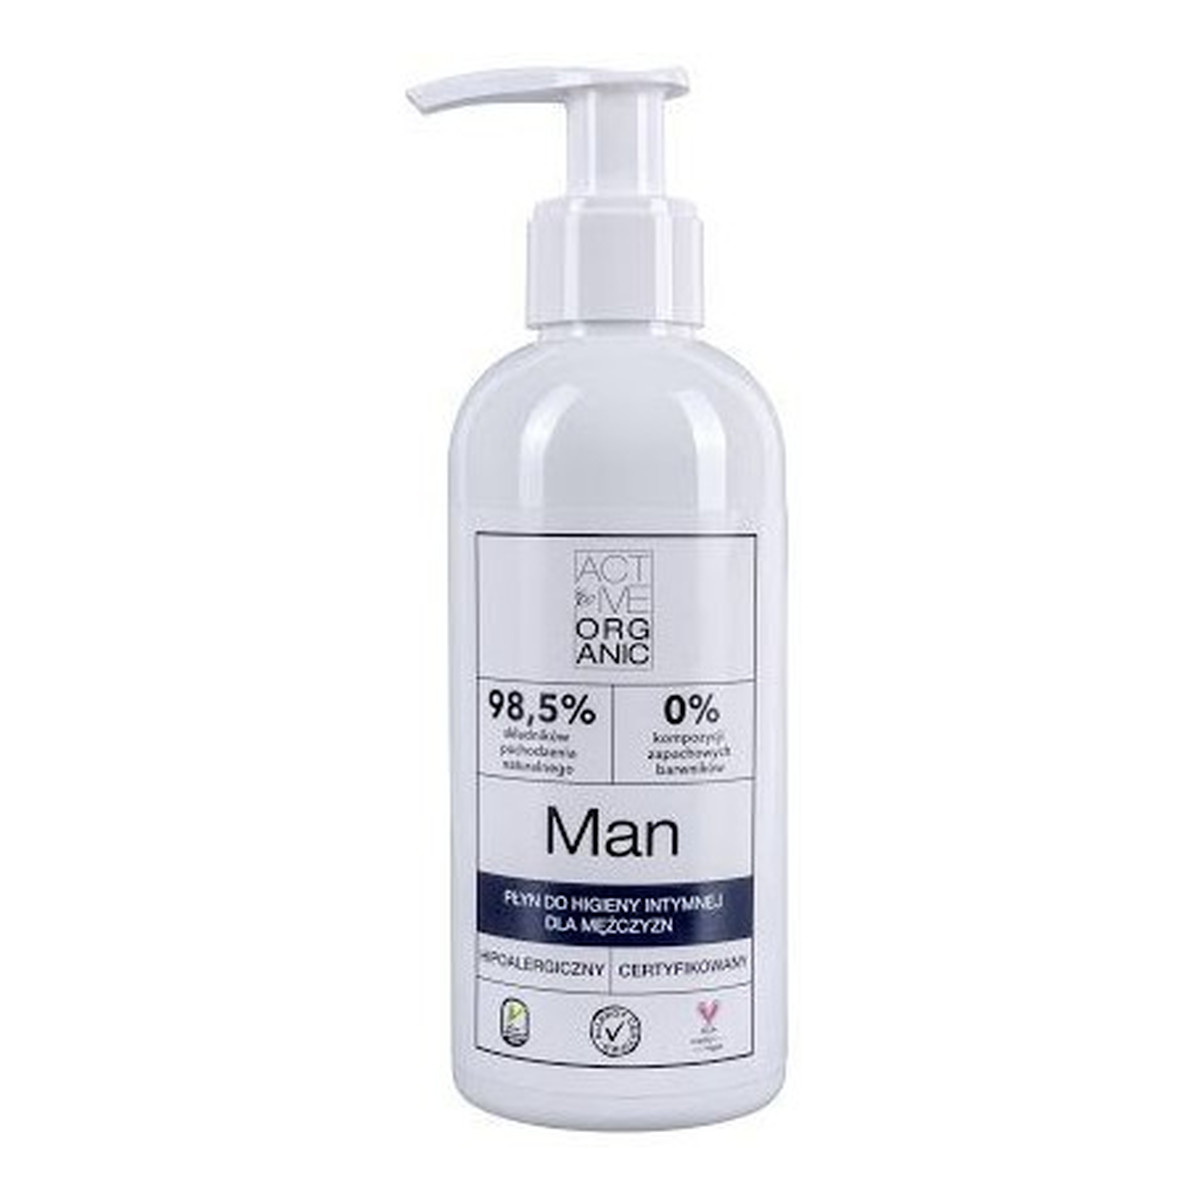 Active Organic Man płyn do higieny intymnej dla mężczyzn 200ml